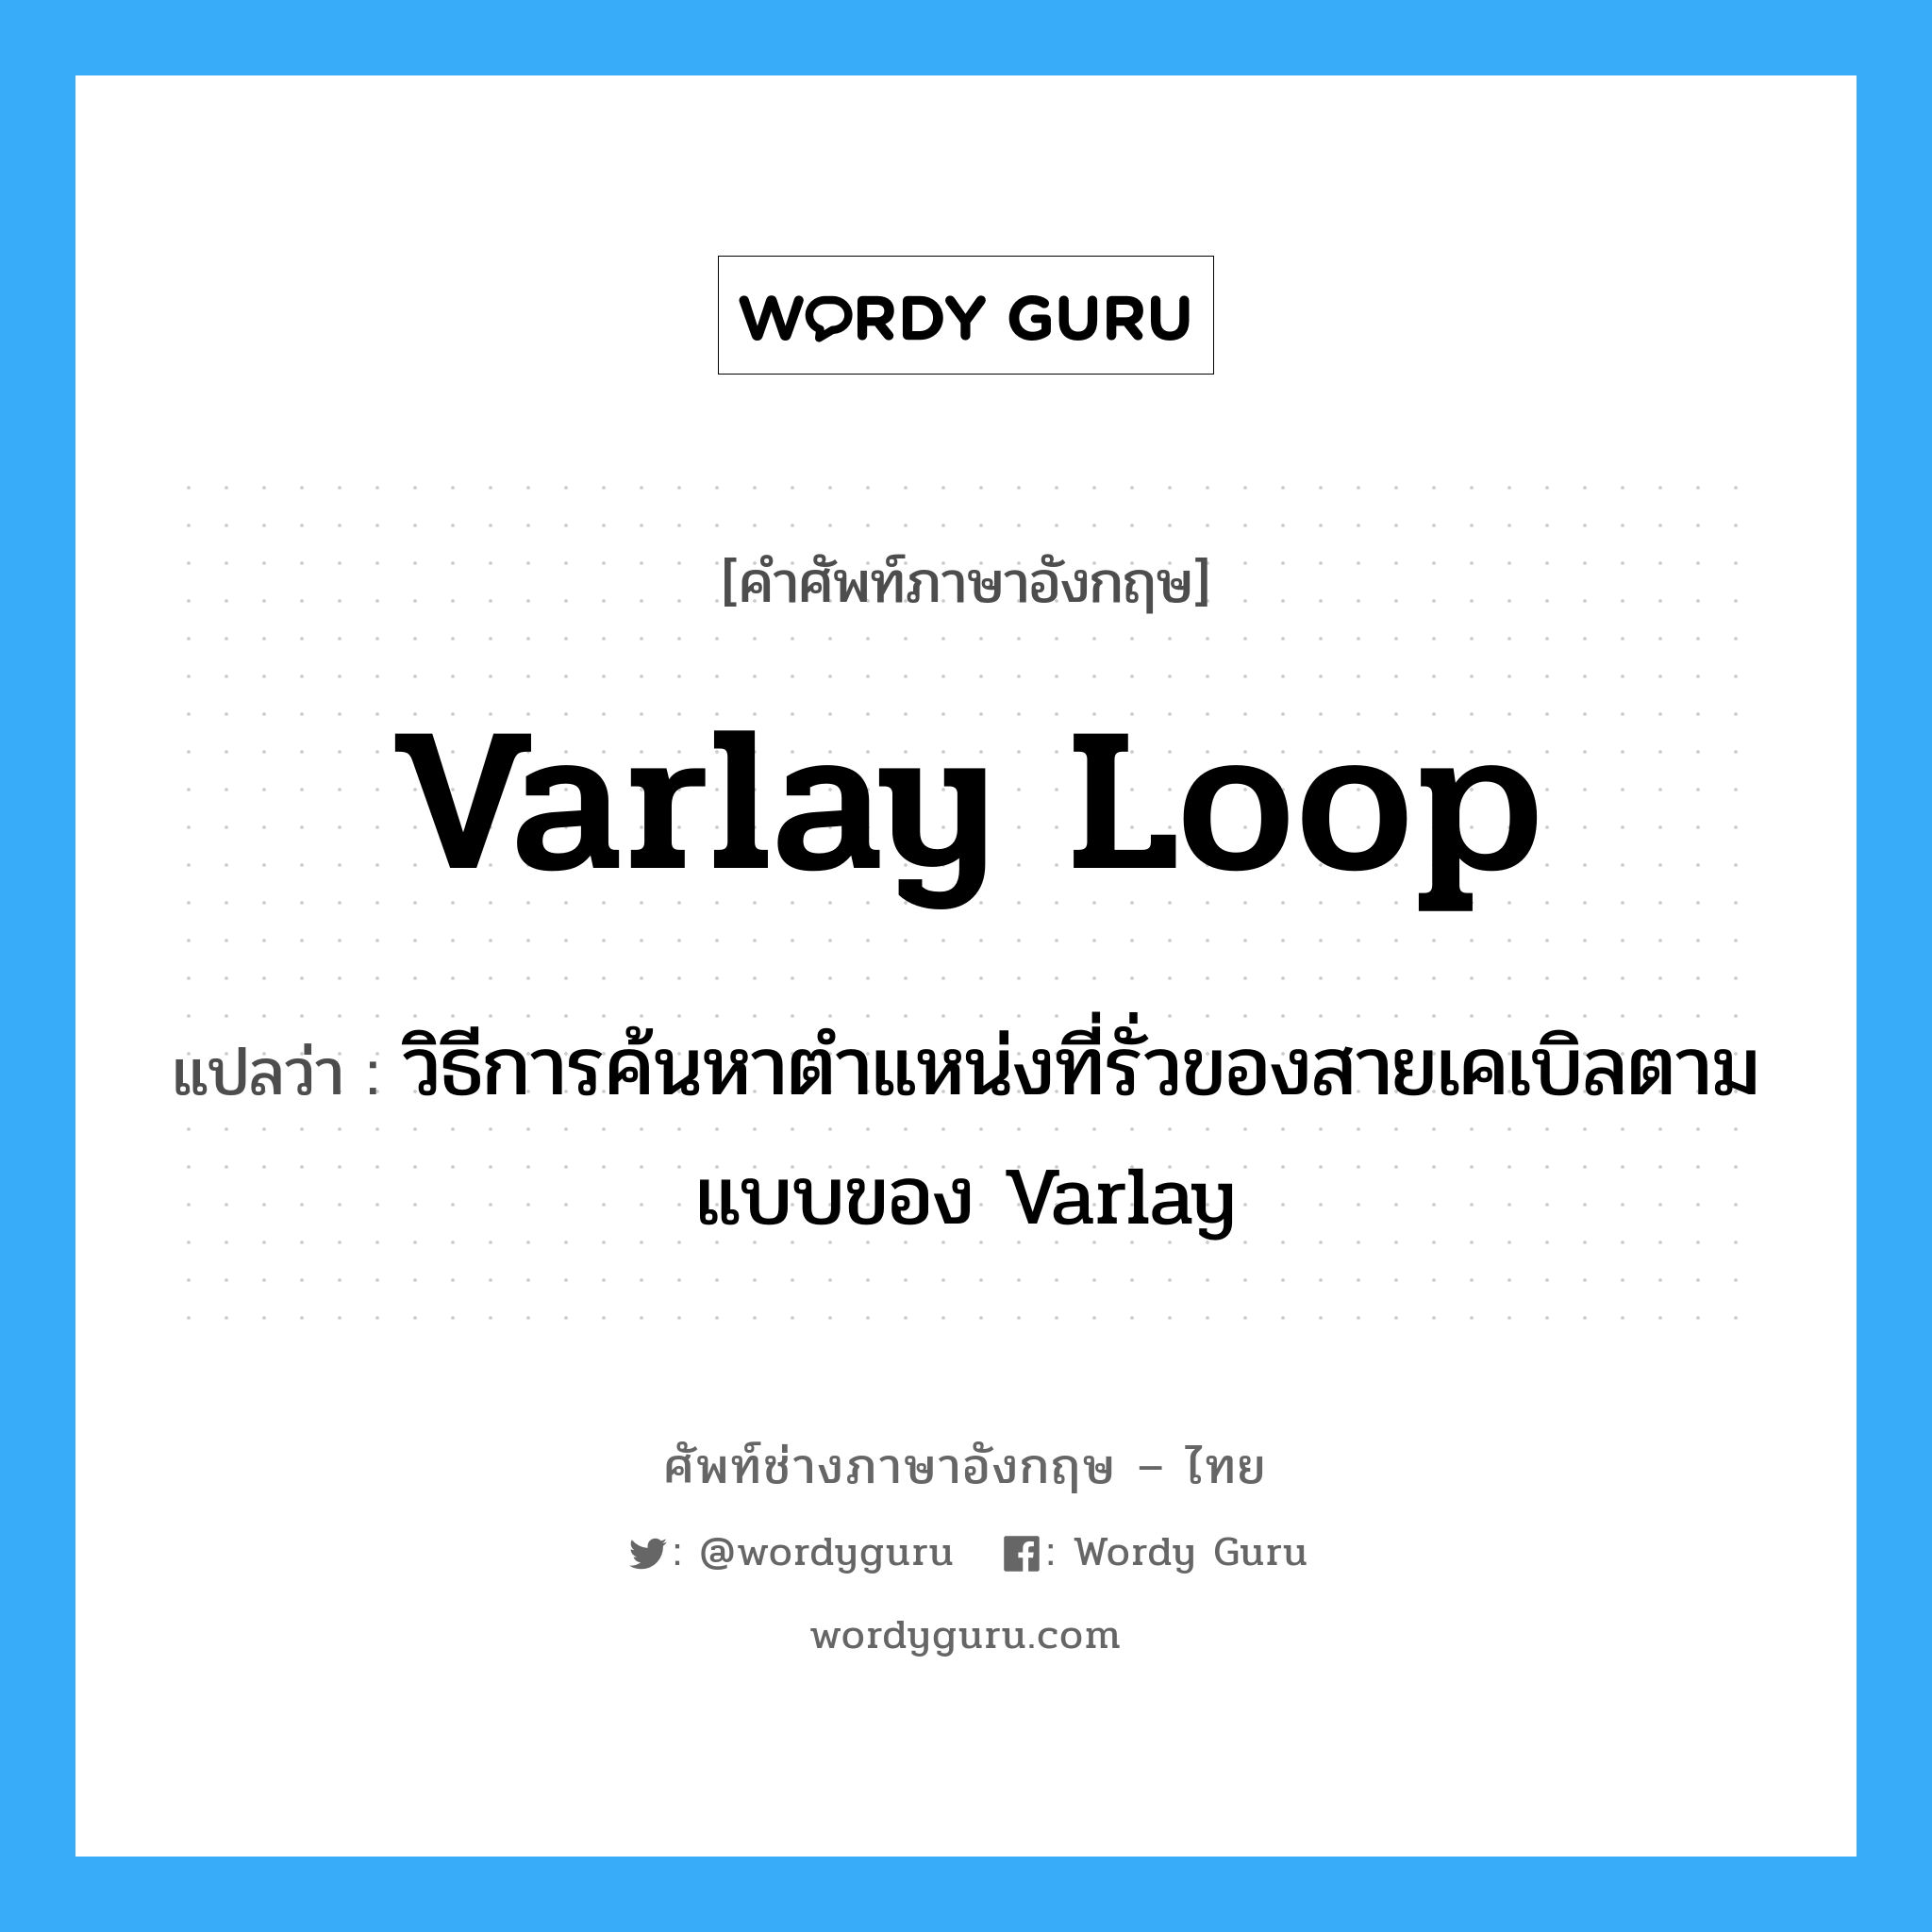 varlay loop แปลว่า?, คำศัพท์ช่างภาษาอังกฤษ - ไทย varlay loop คำศัพท์ภาษาอังกฤษ varlay loop แปลว่า วิธีการค้นหาตำแหน่งที่รั่วของสายเคเบิลตามแบบของ Varlay